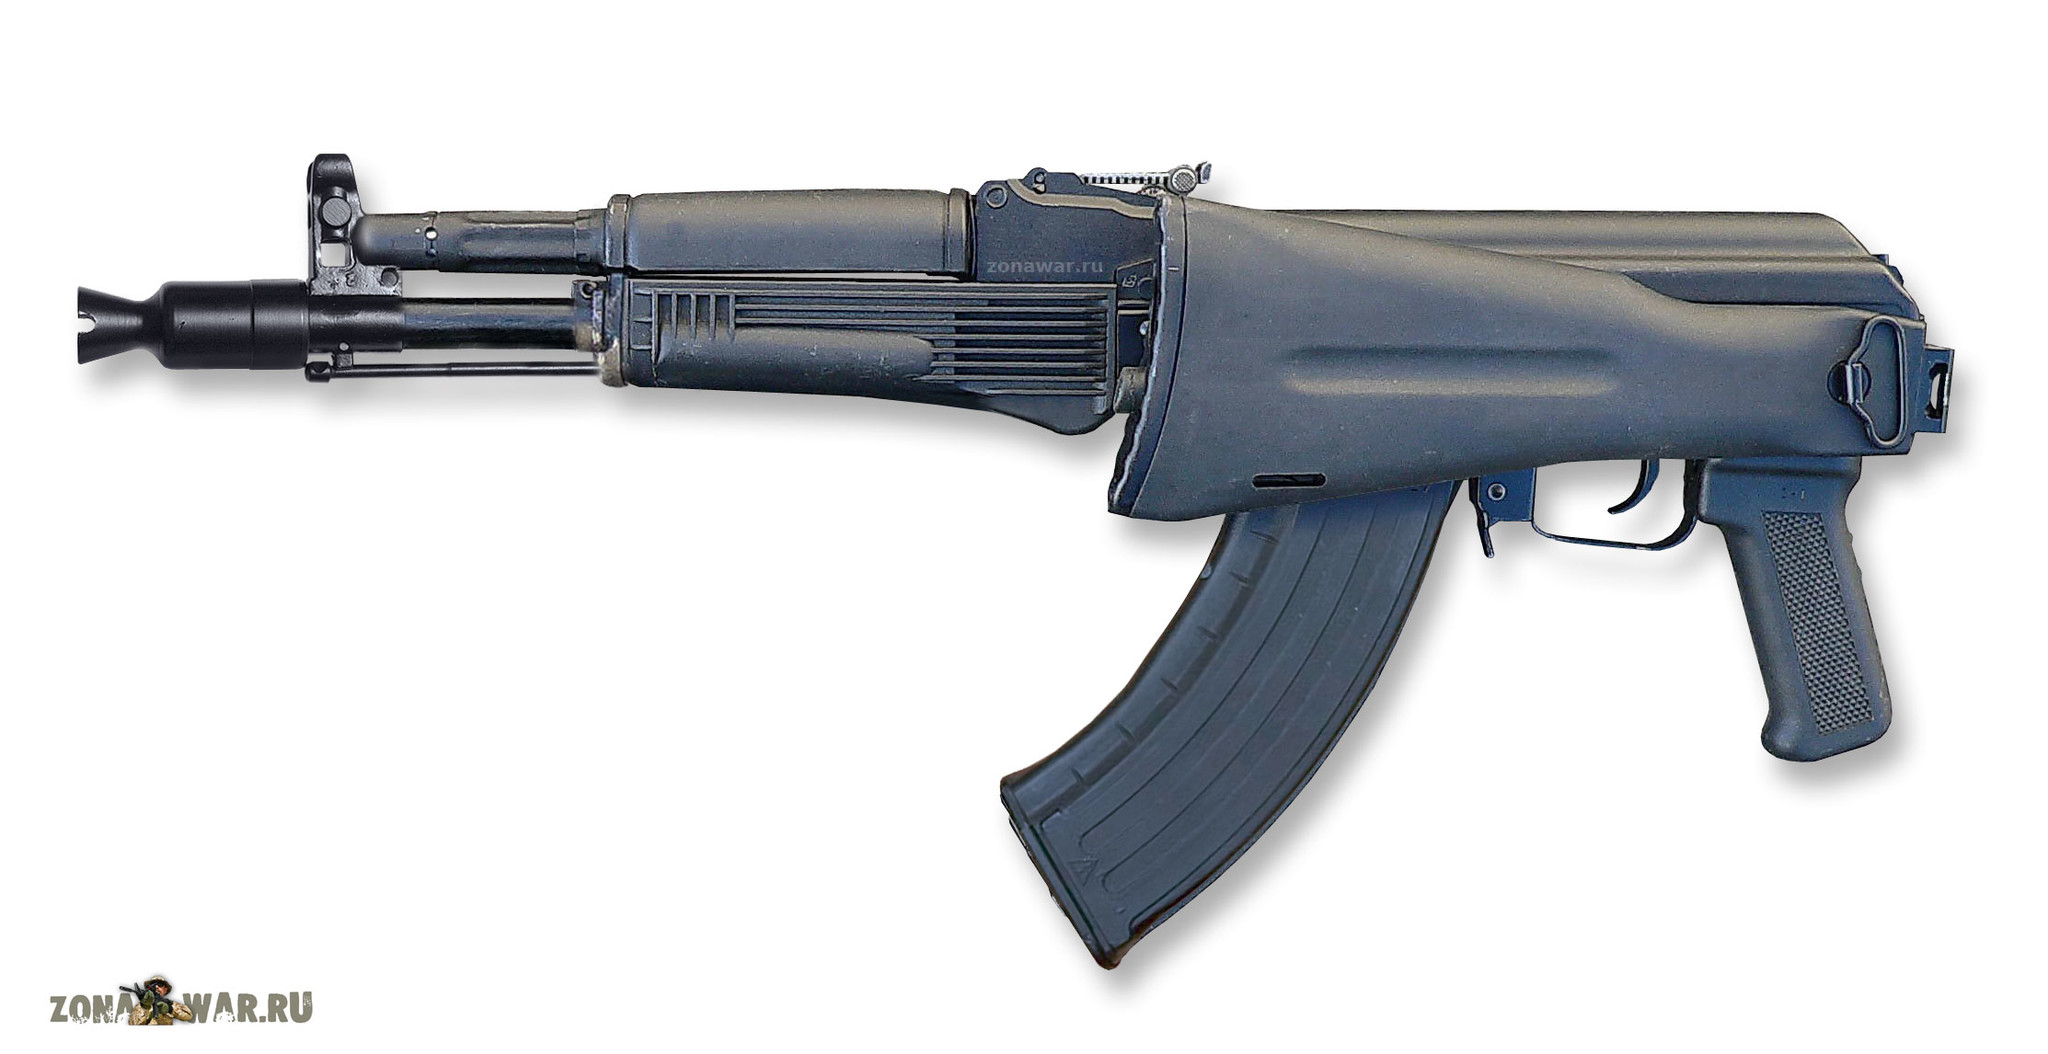 AK 104 assault rifle